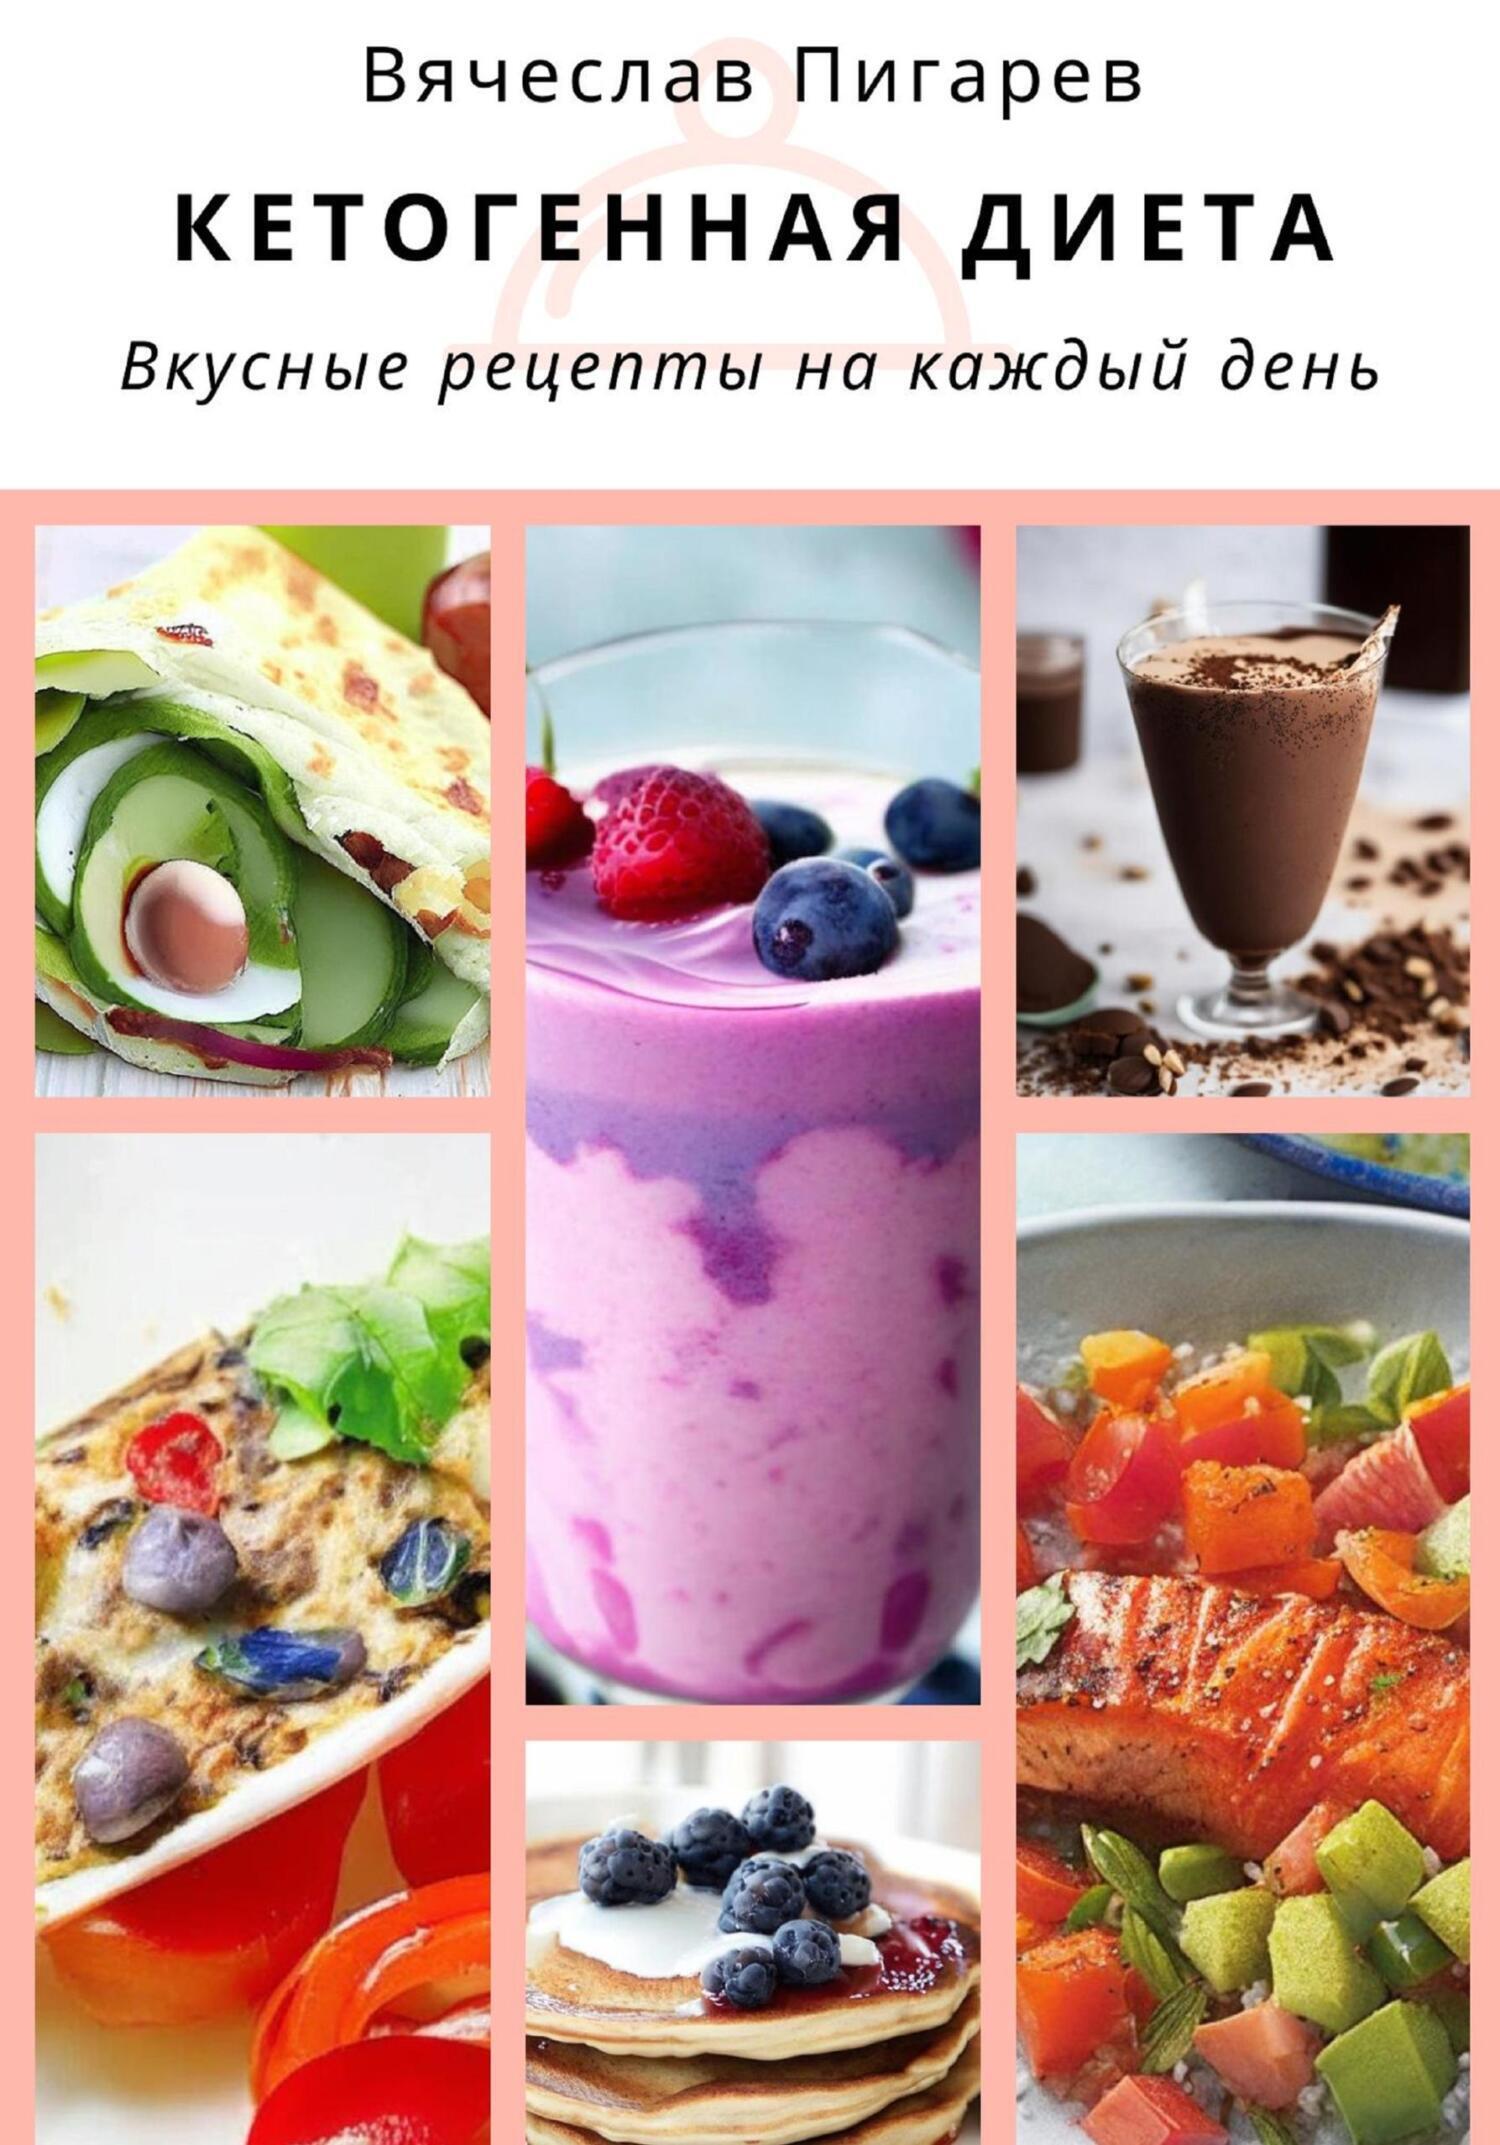 Диета Ковалькова – меню, рецепты, принципы диеты, отзывы и результаты